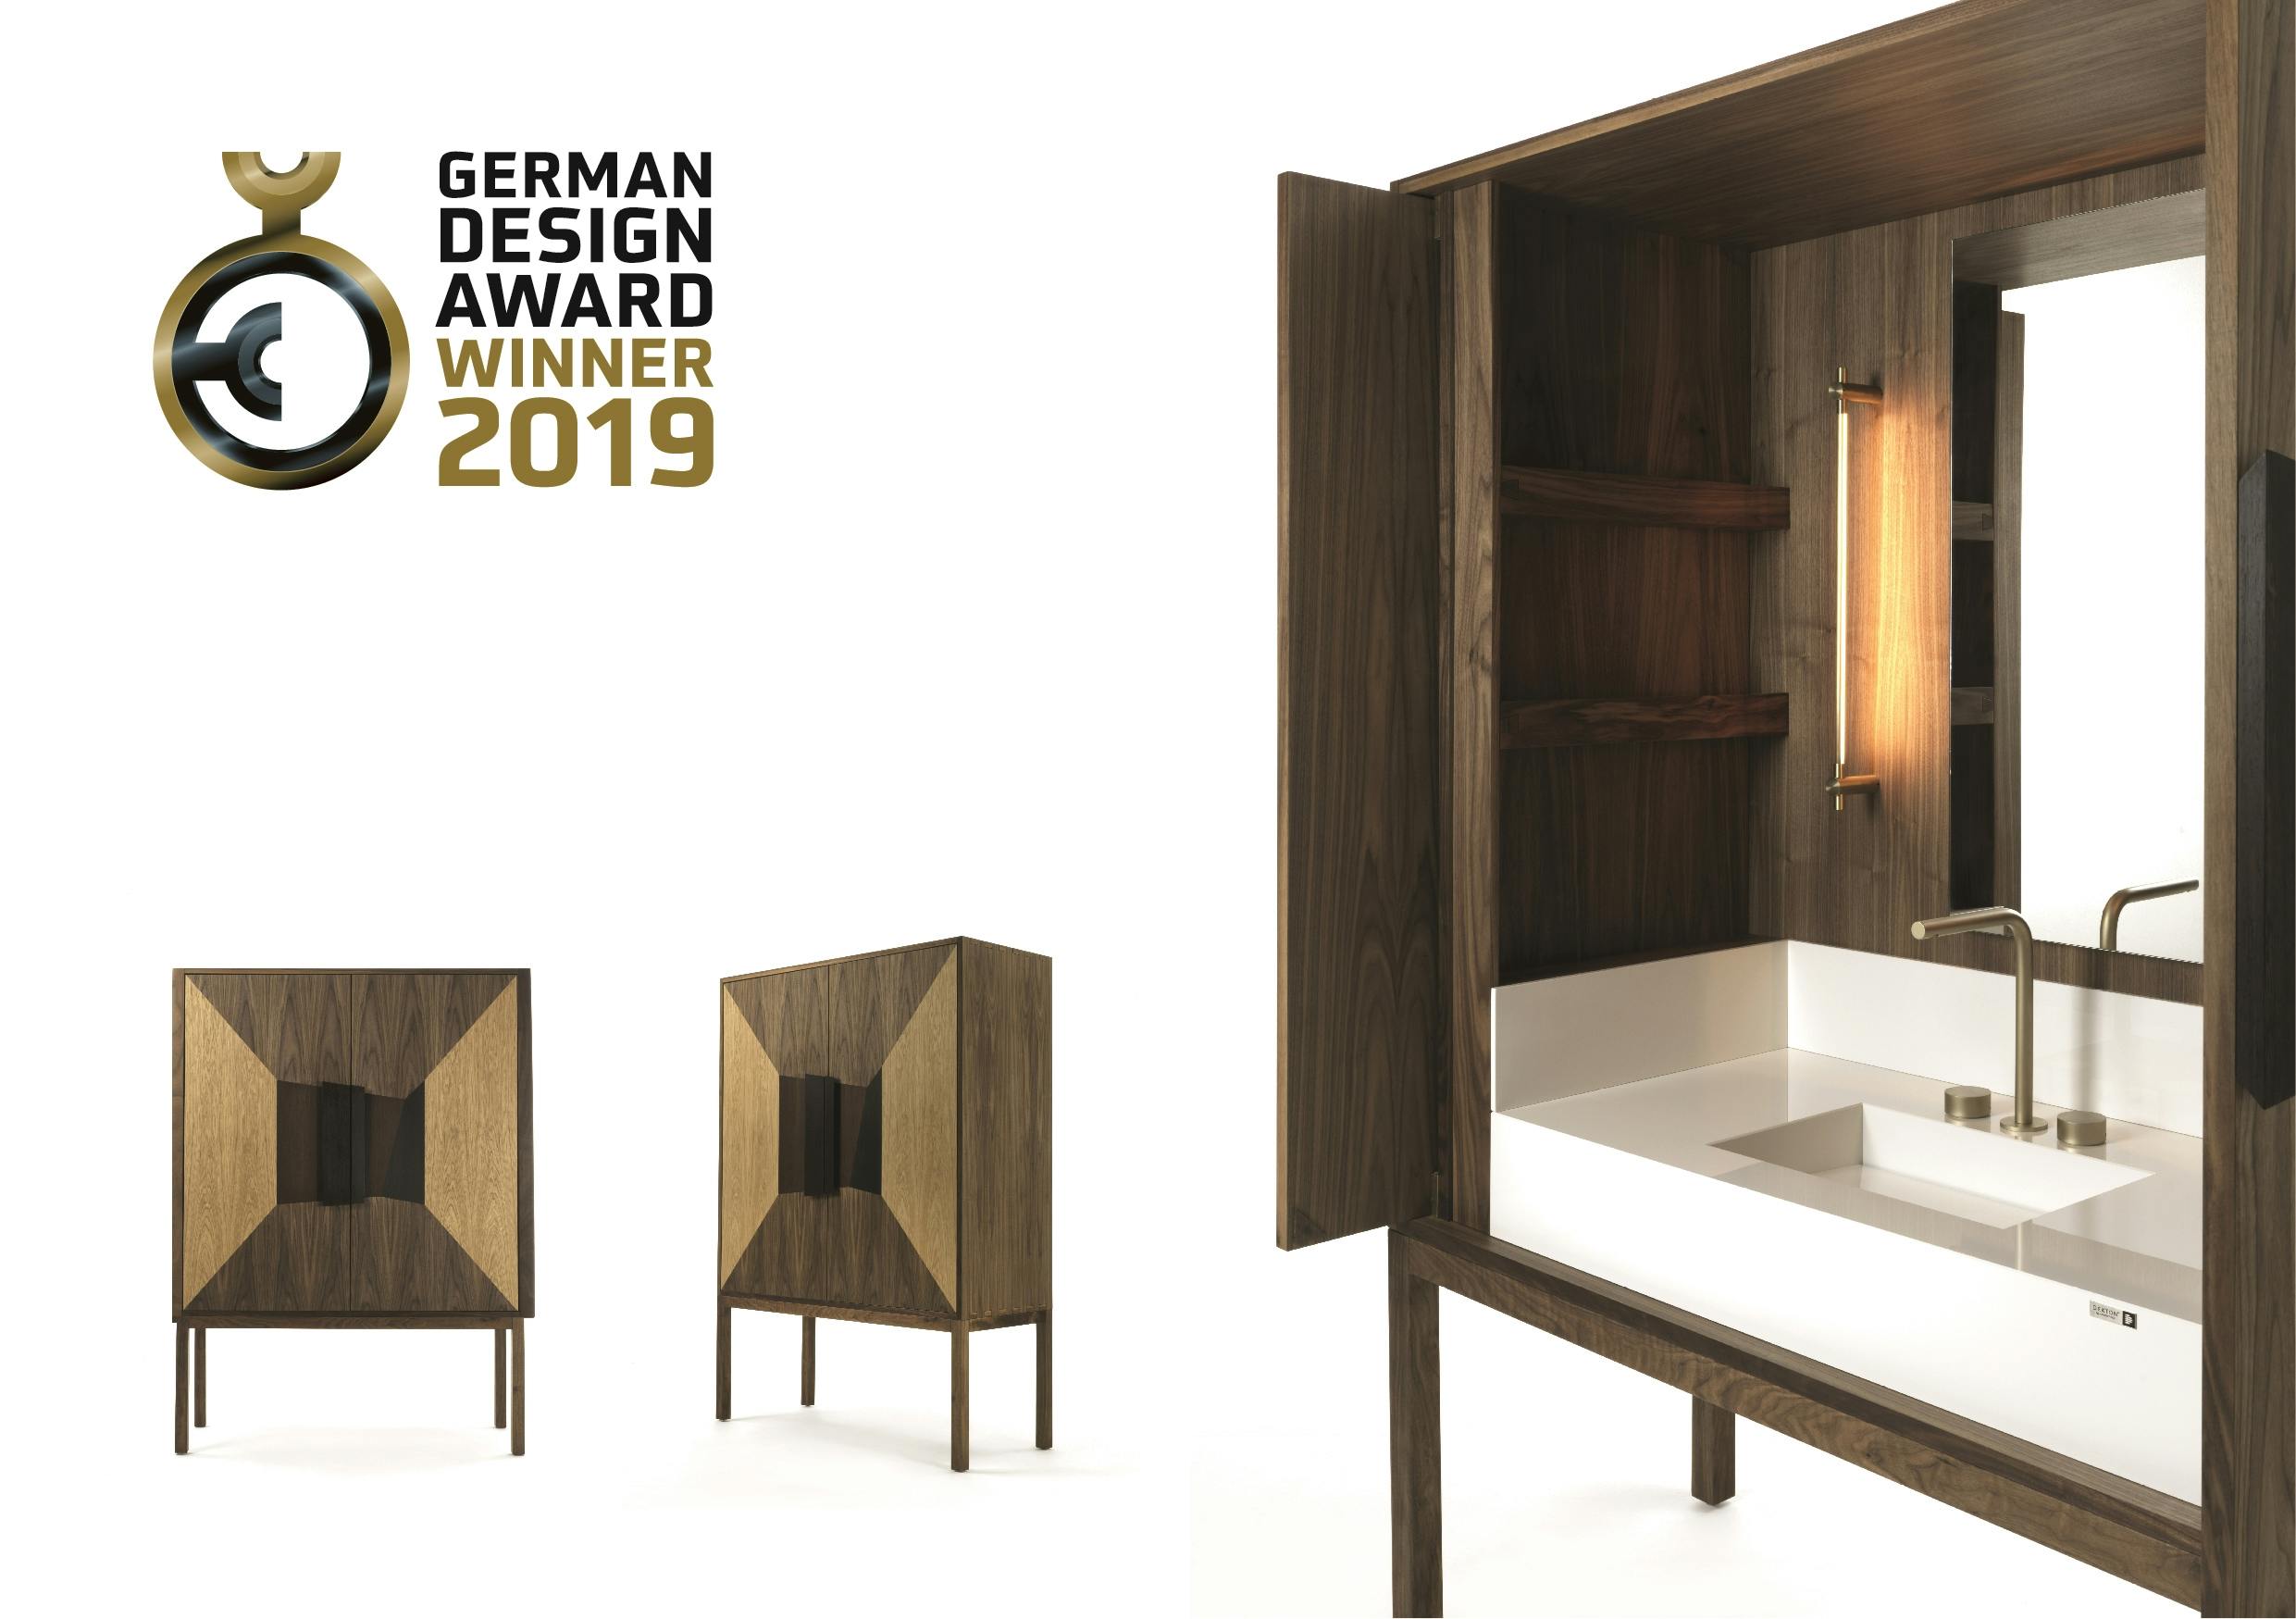 DeKauri Bath Credenza Gewinner des German Design Award 2019